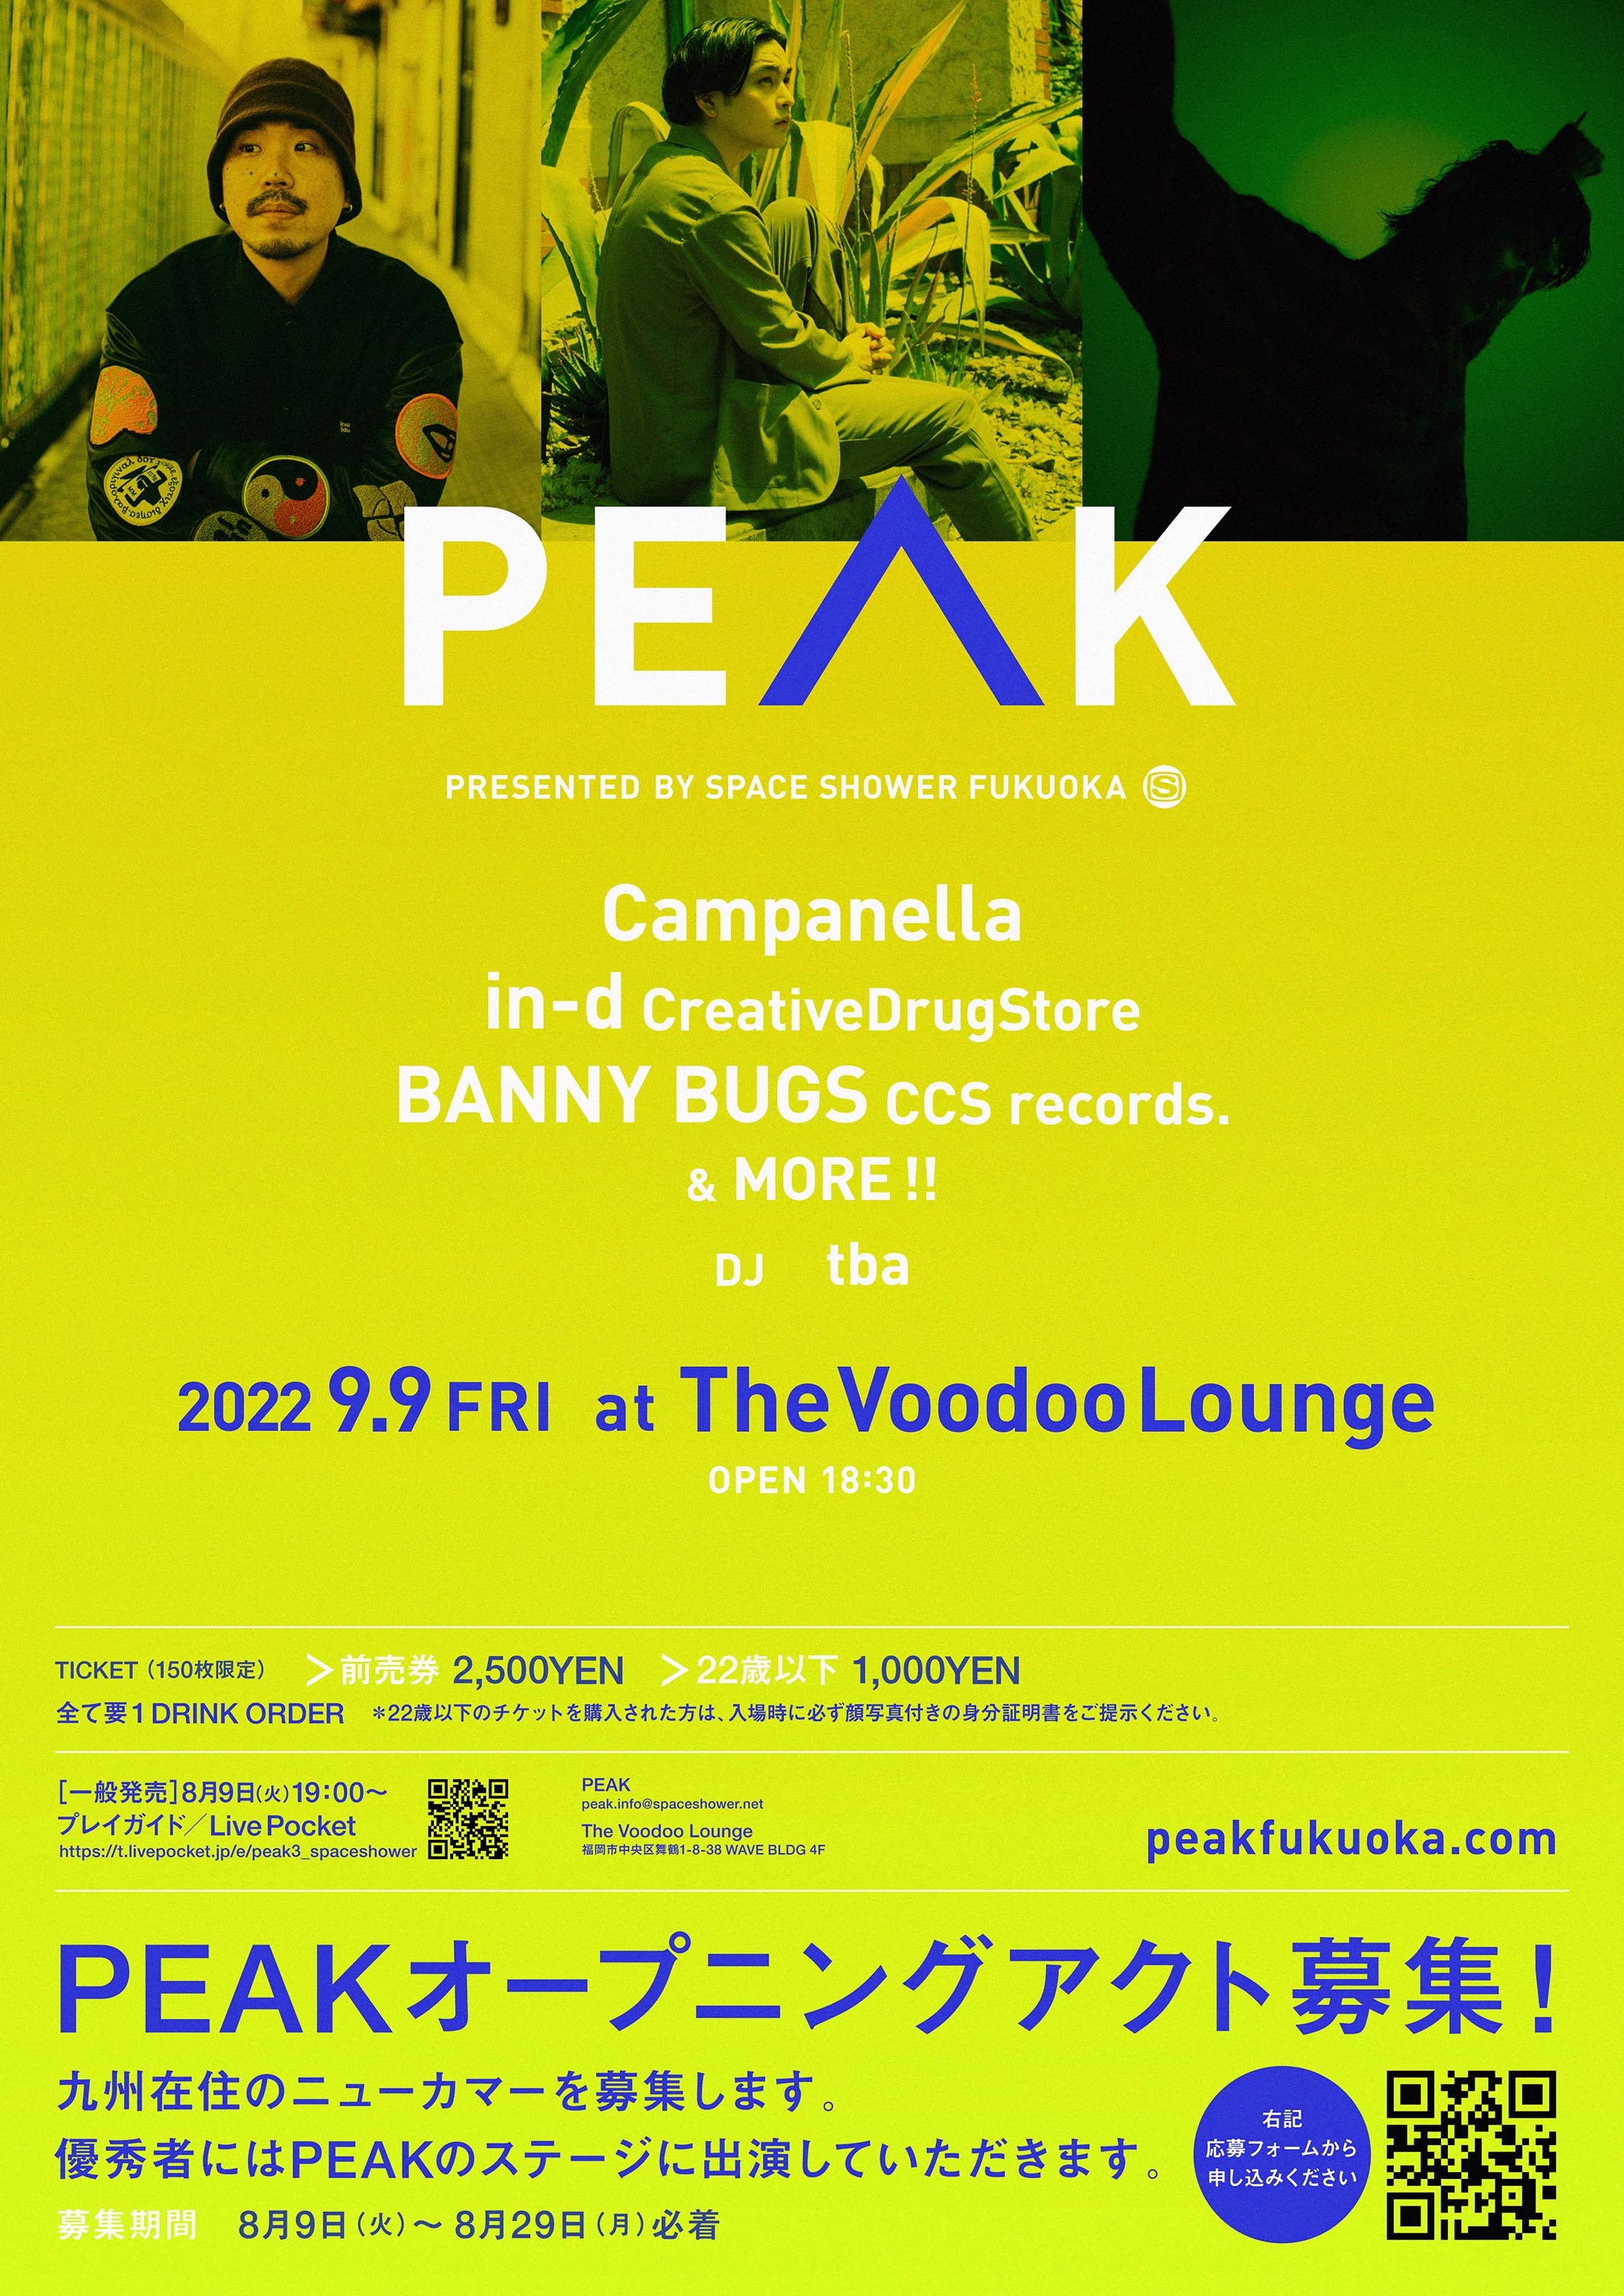 PEAK - Presented by SPACE SHOWER FUKUOKA -